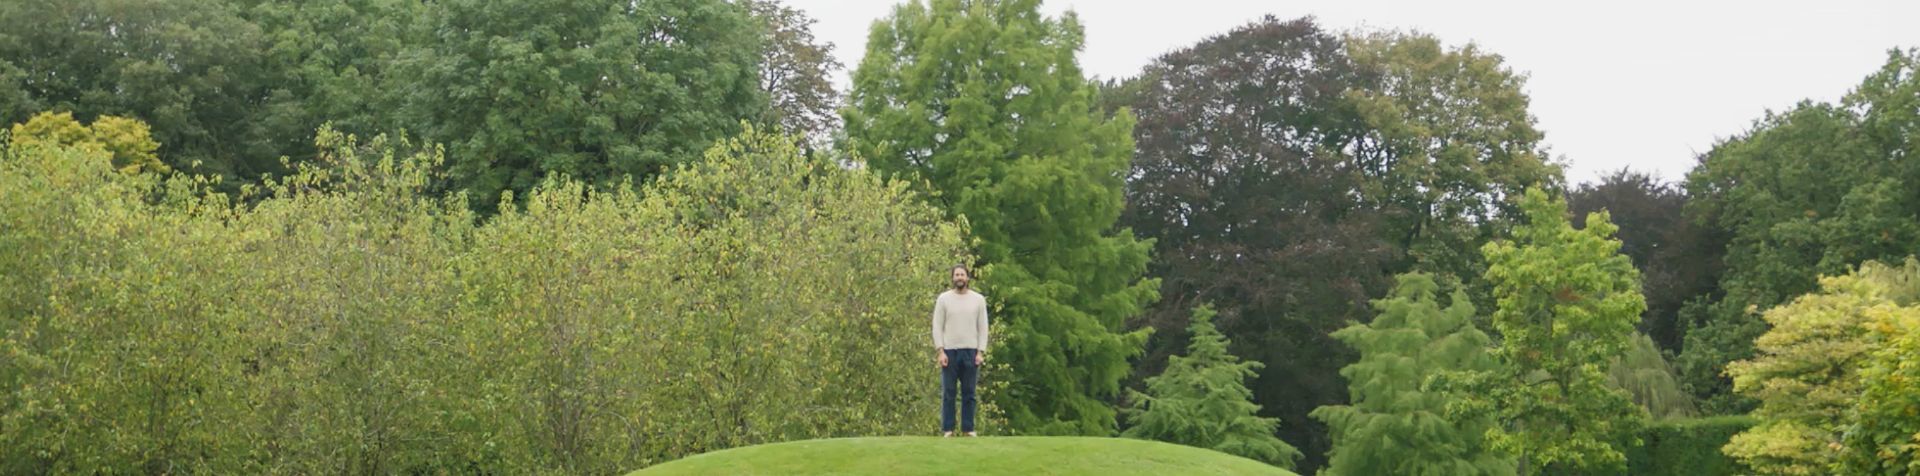 나무와 녹색 언덕에 서 있는 데이비드 드 로스차일드. 그는 맨발이고 회색 점퍼와 짙은 청바지를 입고 있습니다.